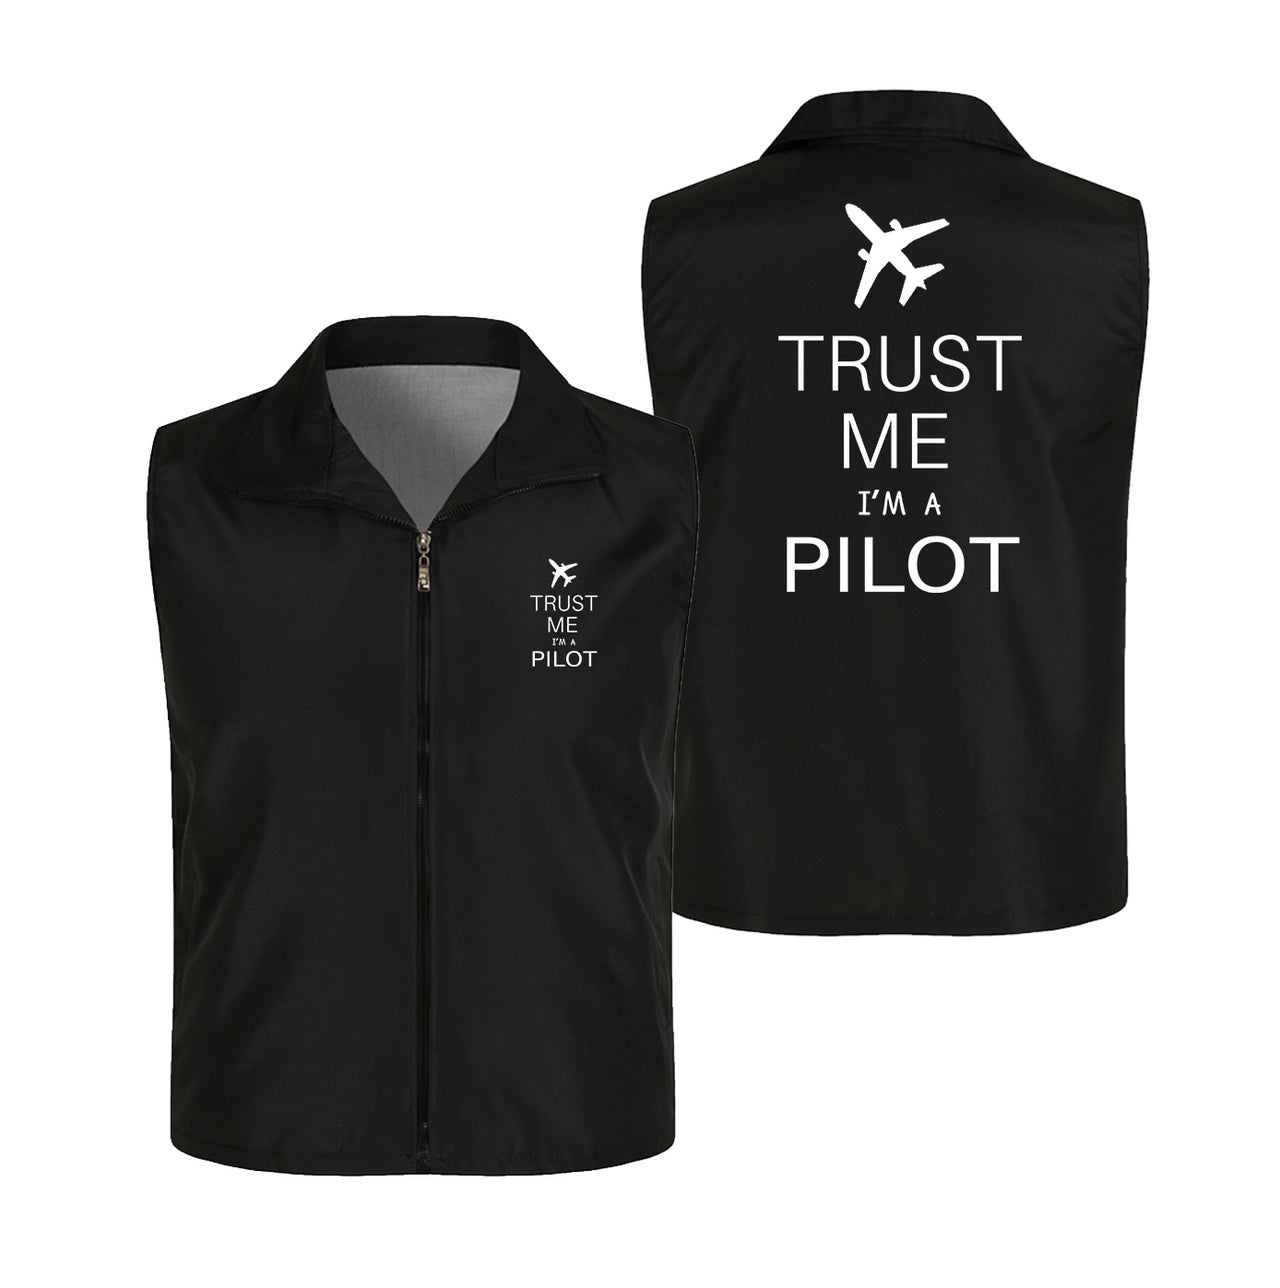 Trust Me I'm a Pilot 2 Designed Thin Style Vests